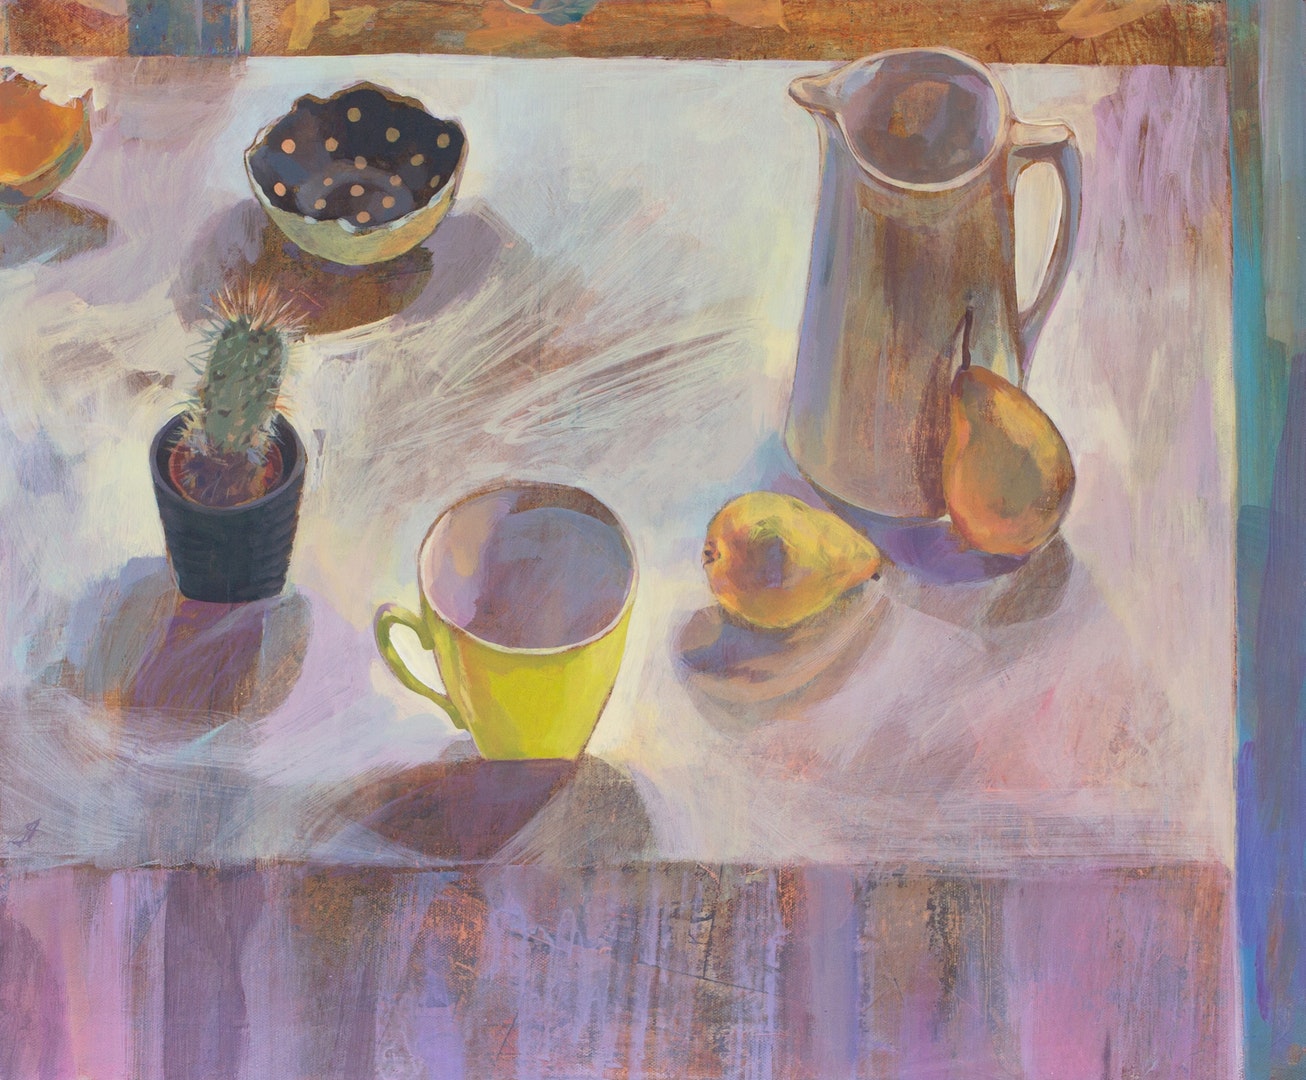 'Shades of Yellow', Gabriella Buckingham, Acrylic on canvas, 51 x 61 cm